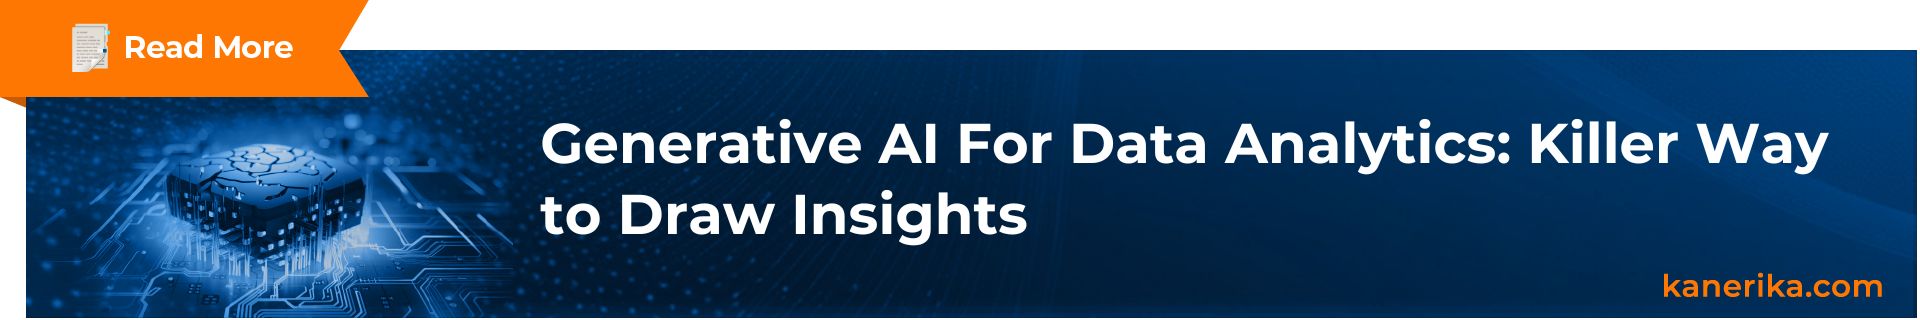 Gen AI for Data Analytics